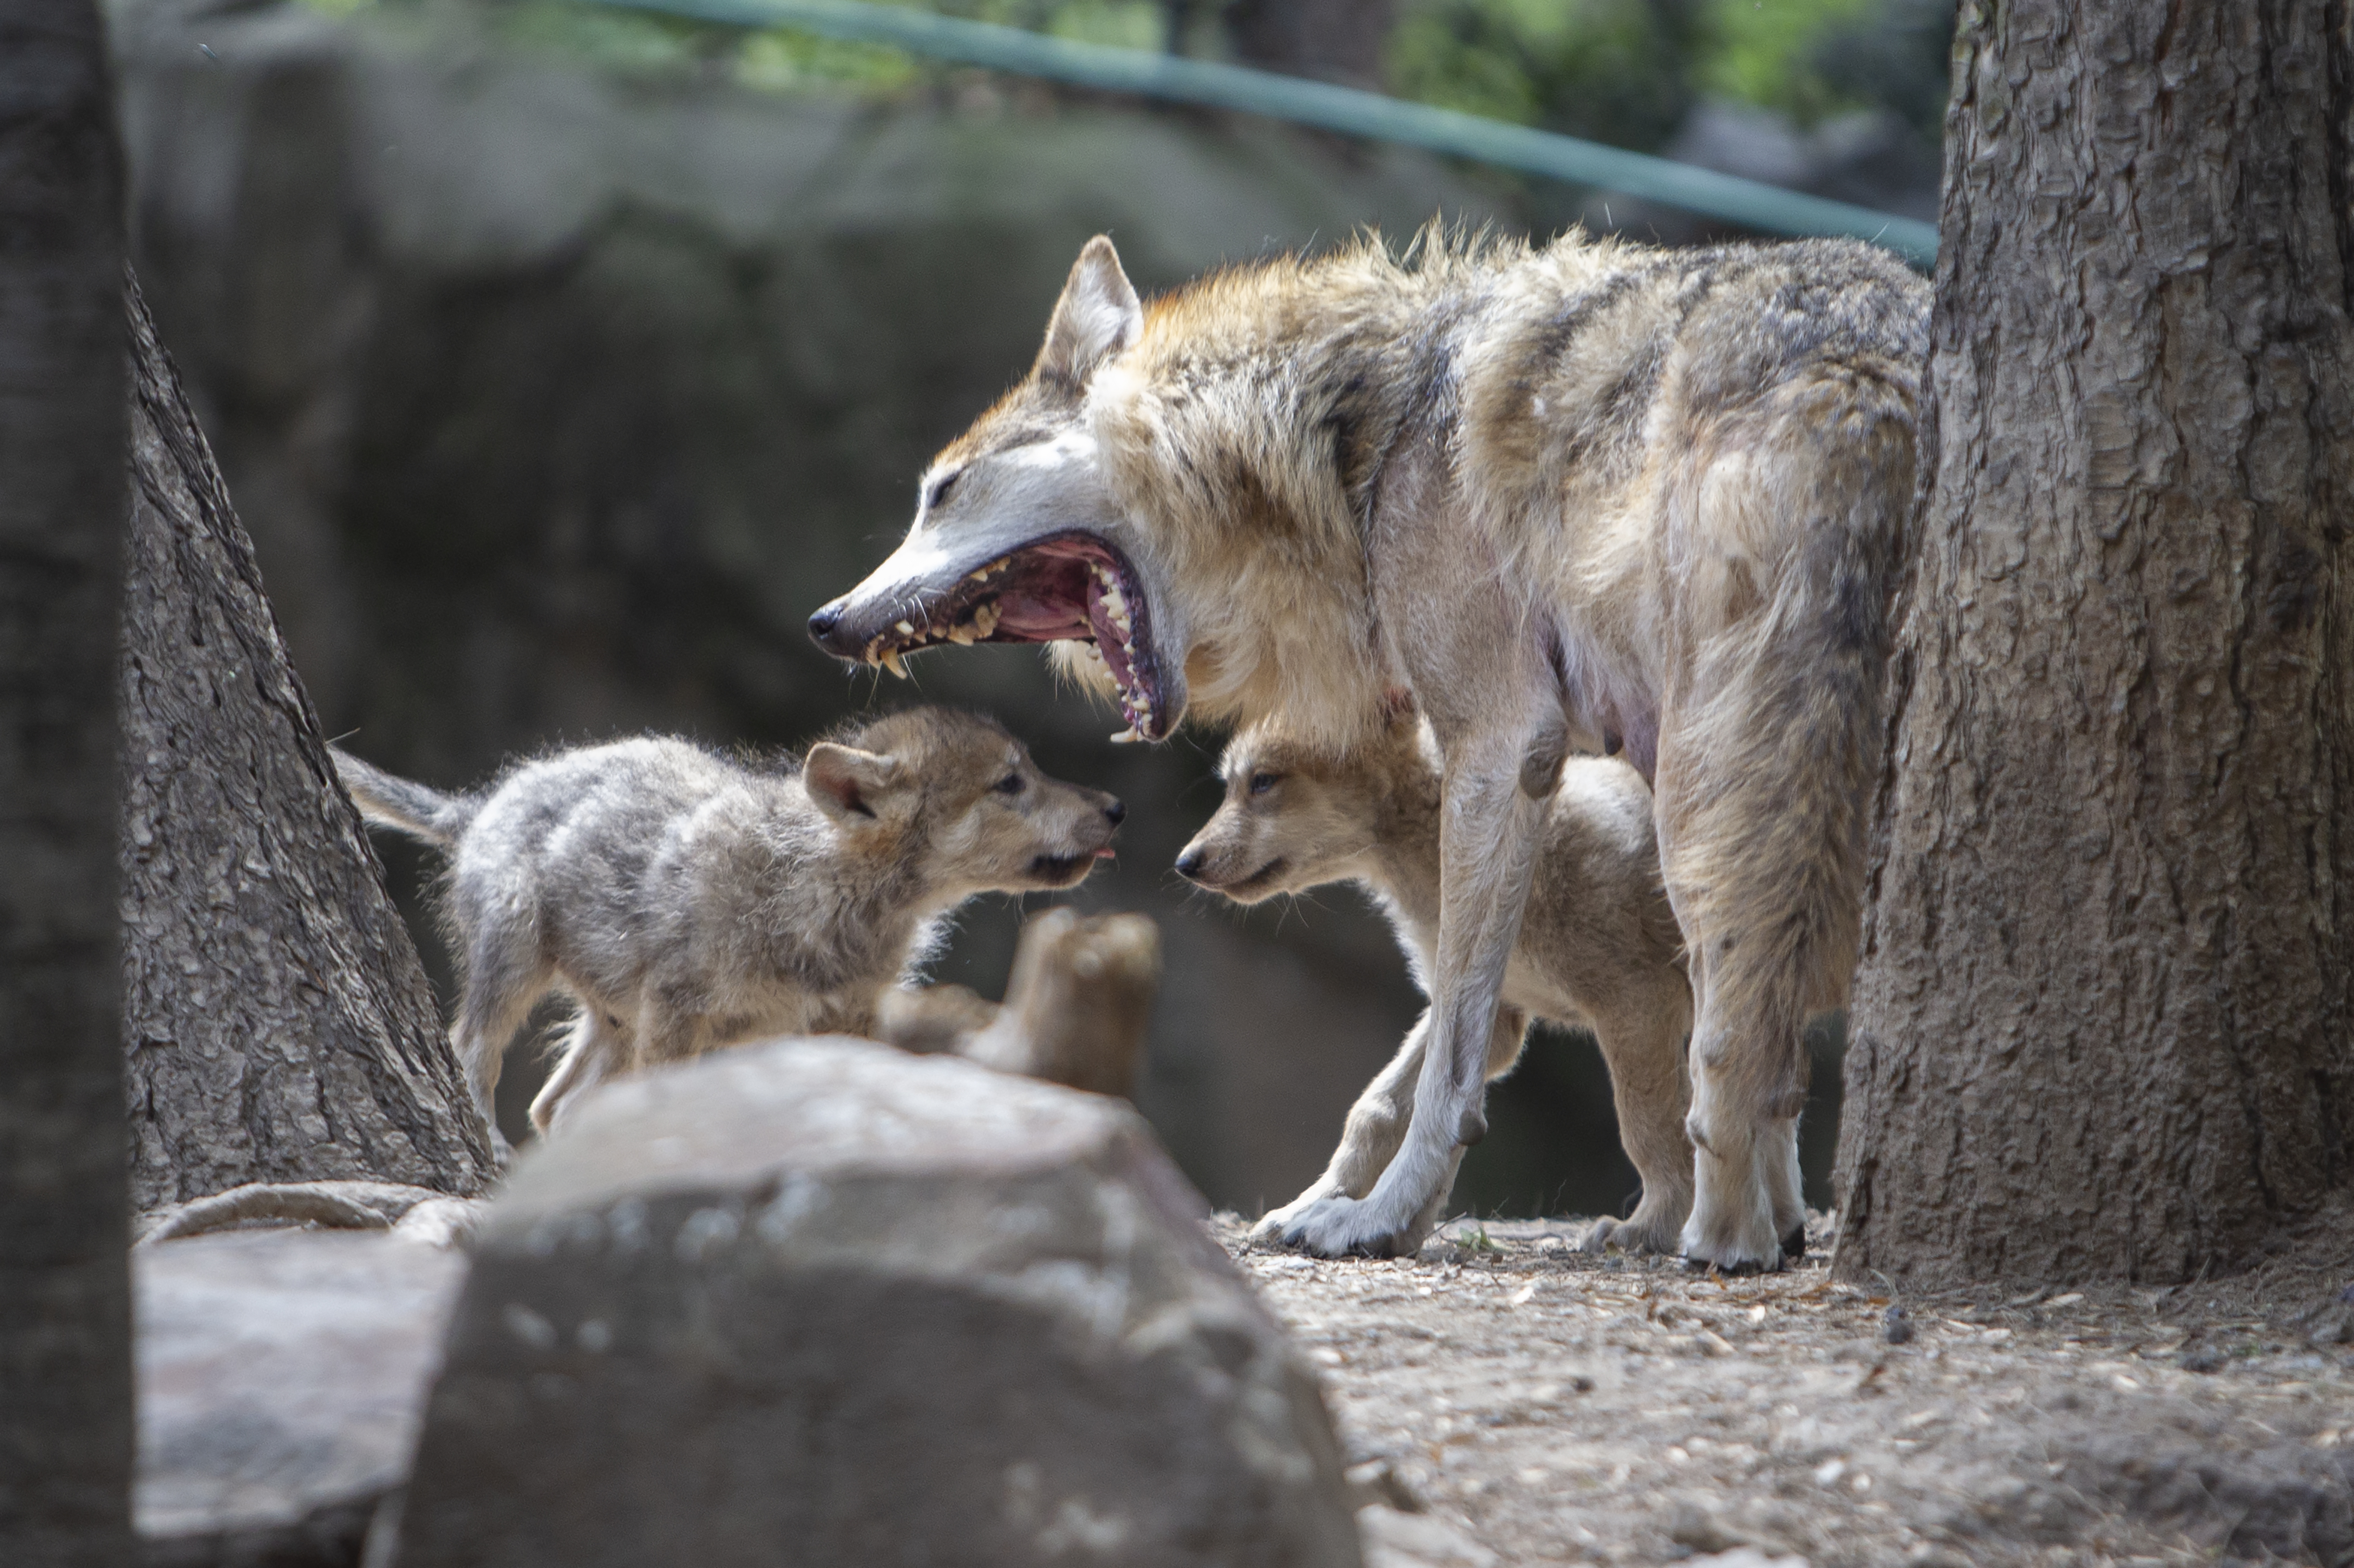 Crías de lobo mexicano nacidas en el zoológico de Chapultepec junto a su madre mientras bosteza, Ciudad de México. Junio 11, 2021.Foto: Karina Hernández / Infobae